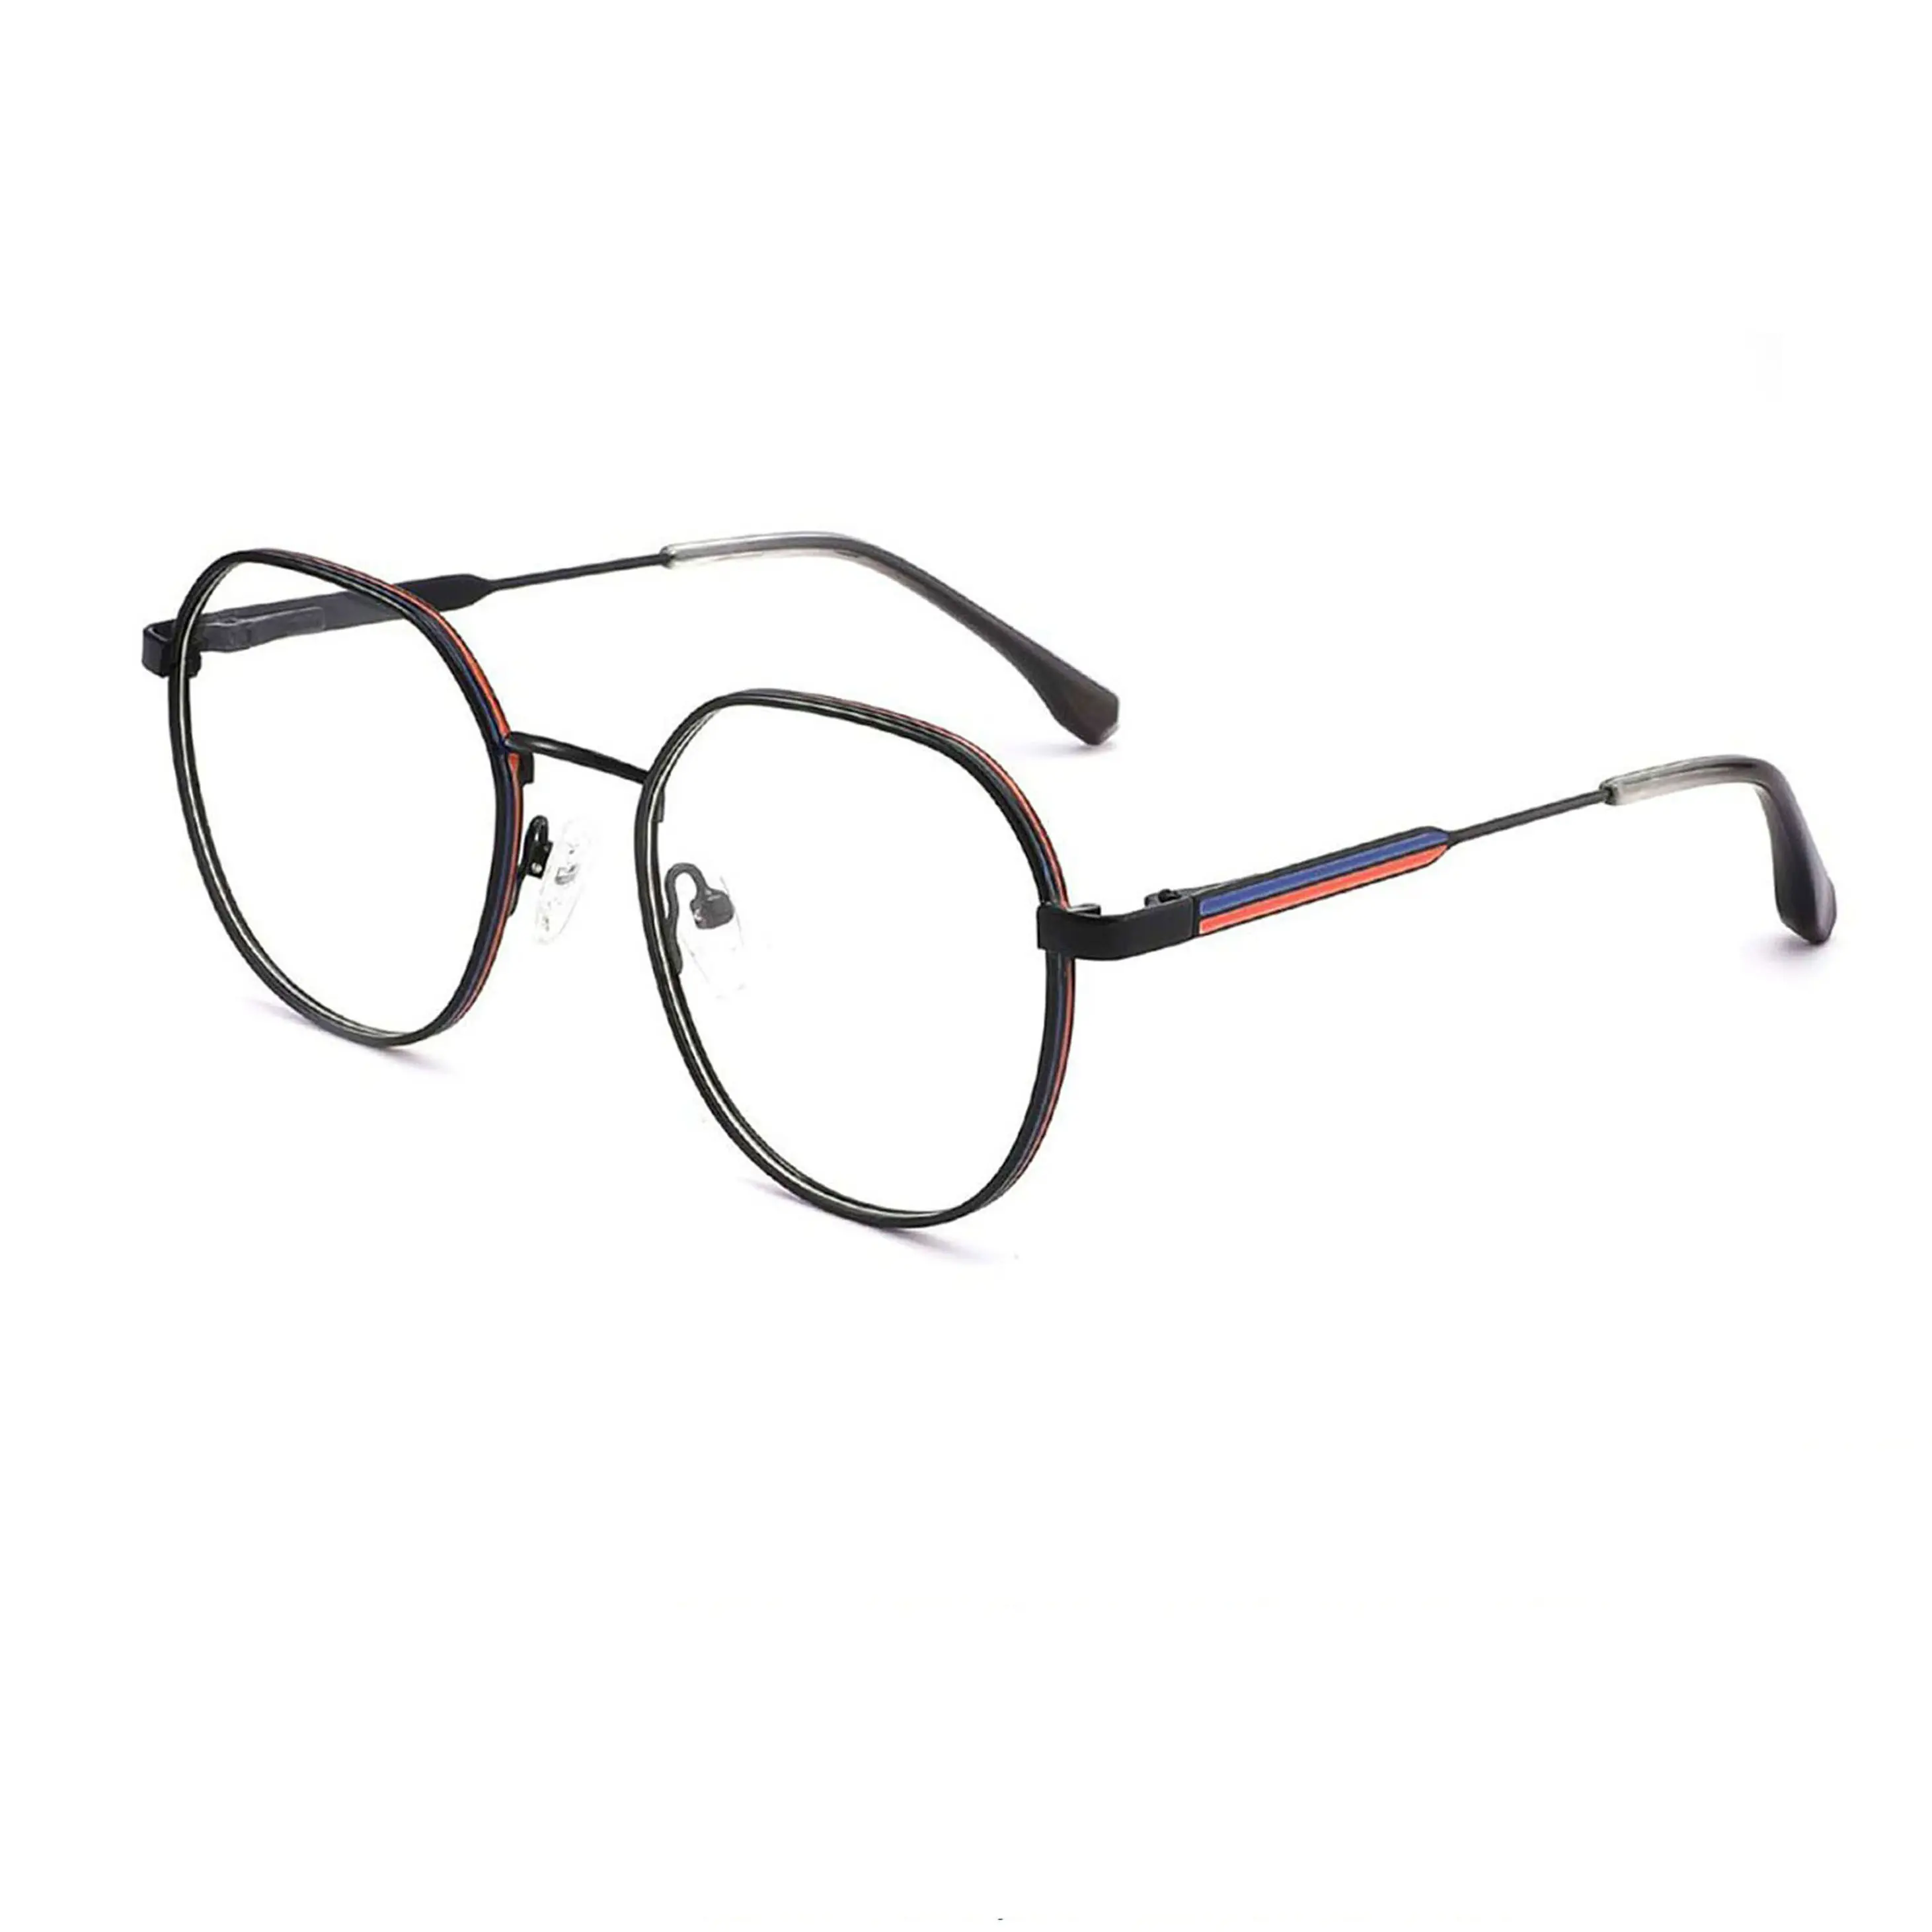 Série de montures de lunettes optiques en métal classique économique Ready Stock à faible quantité minimale de commande, livraison rapide